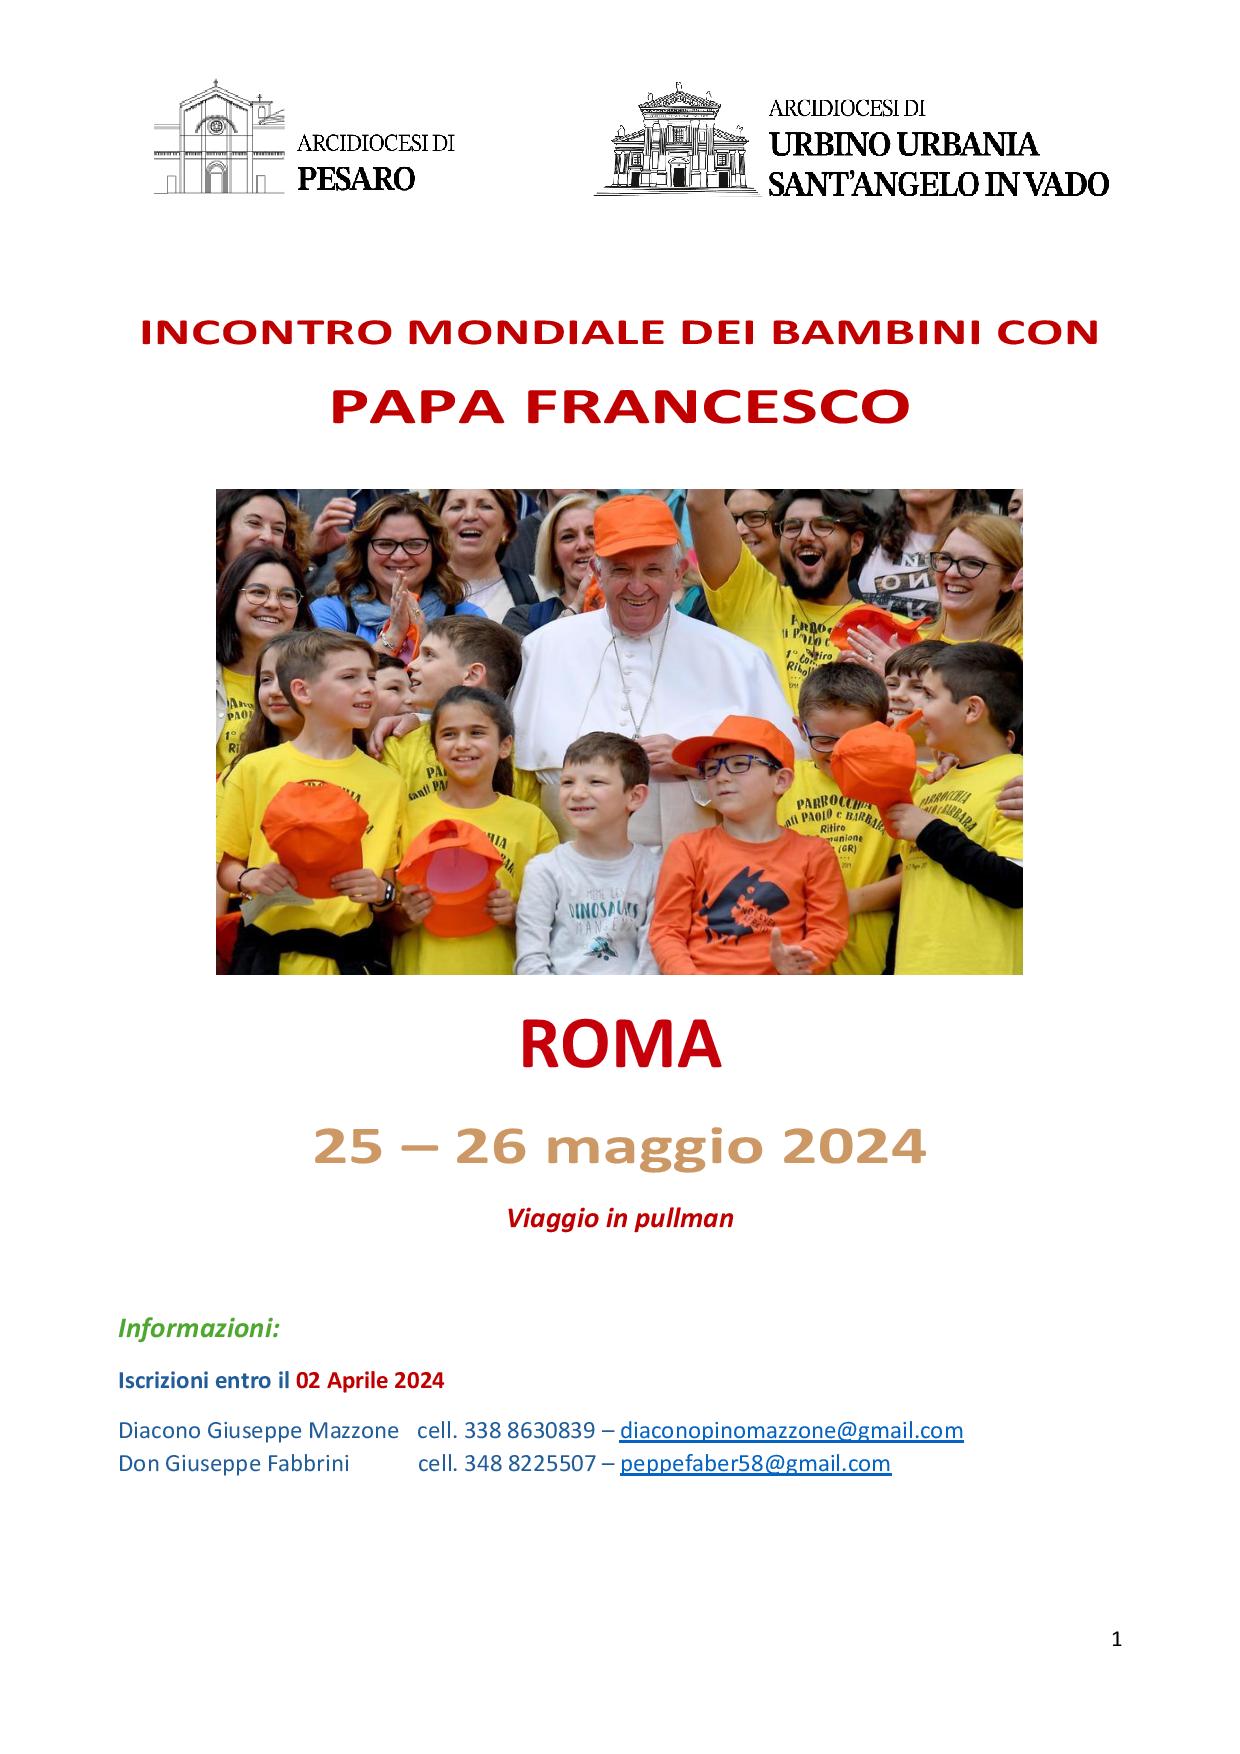 PRIMA GIORNATA MONDIALE DEI BAMBINI A ROMA  – Sabato 25 e domenica 26 maggio 2024 – INDICAZIONI PER PARTECIPARE